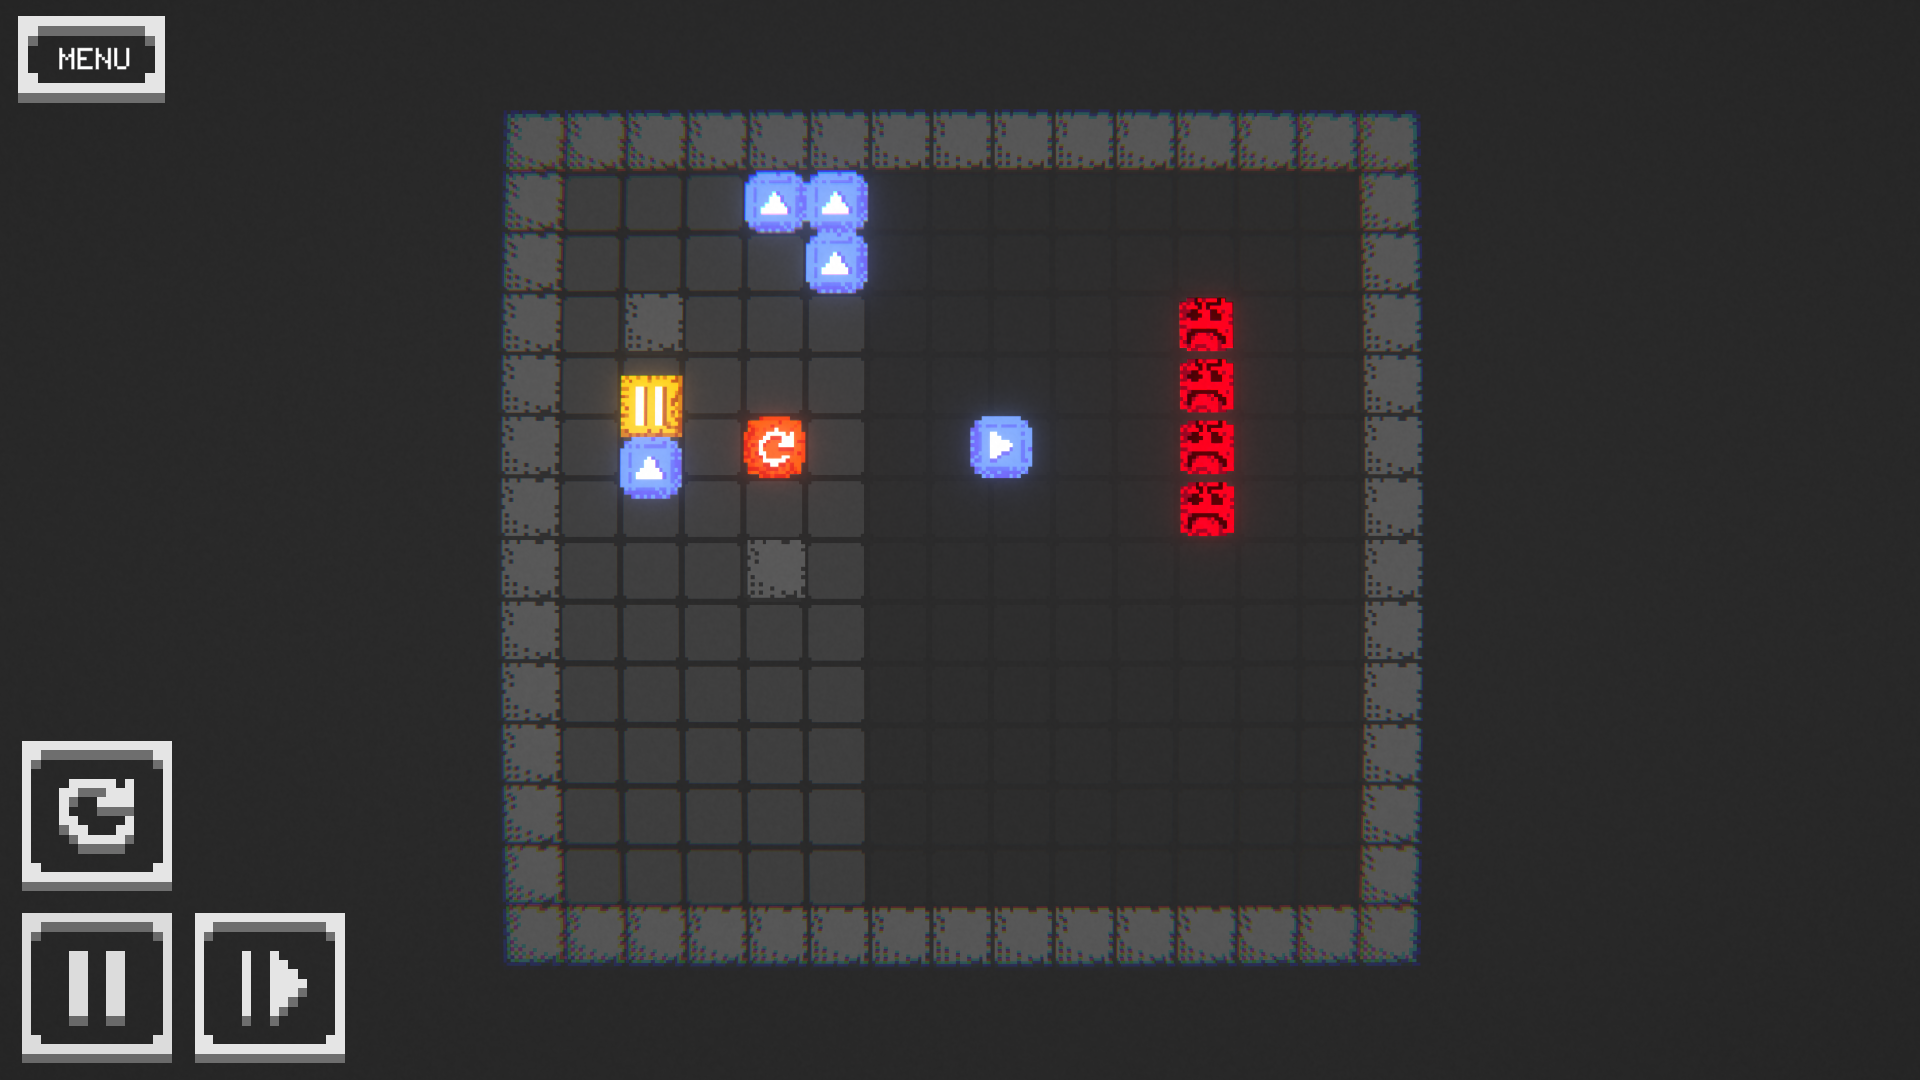 I Made a Zero Player Game 